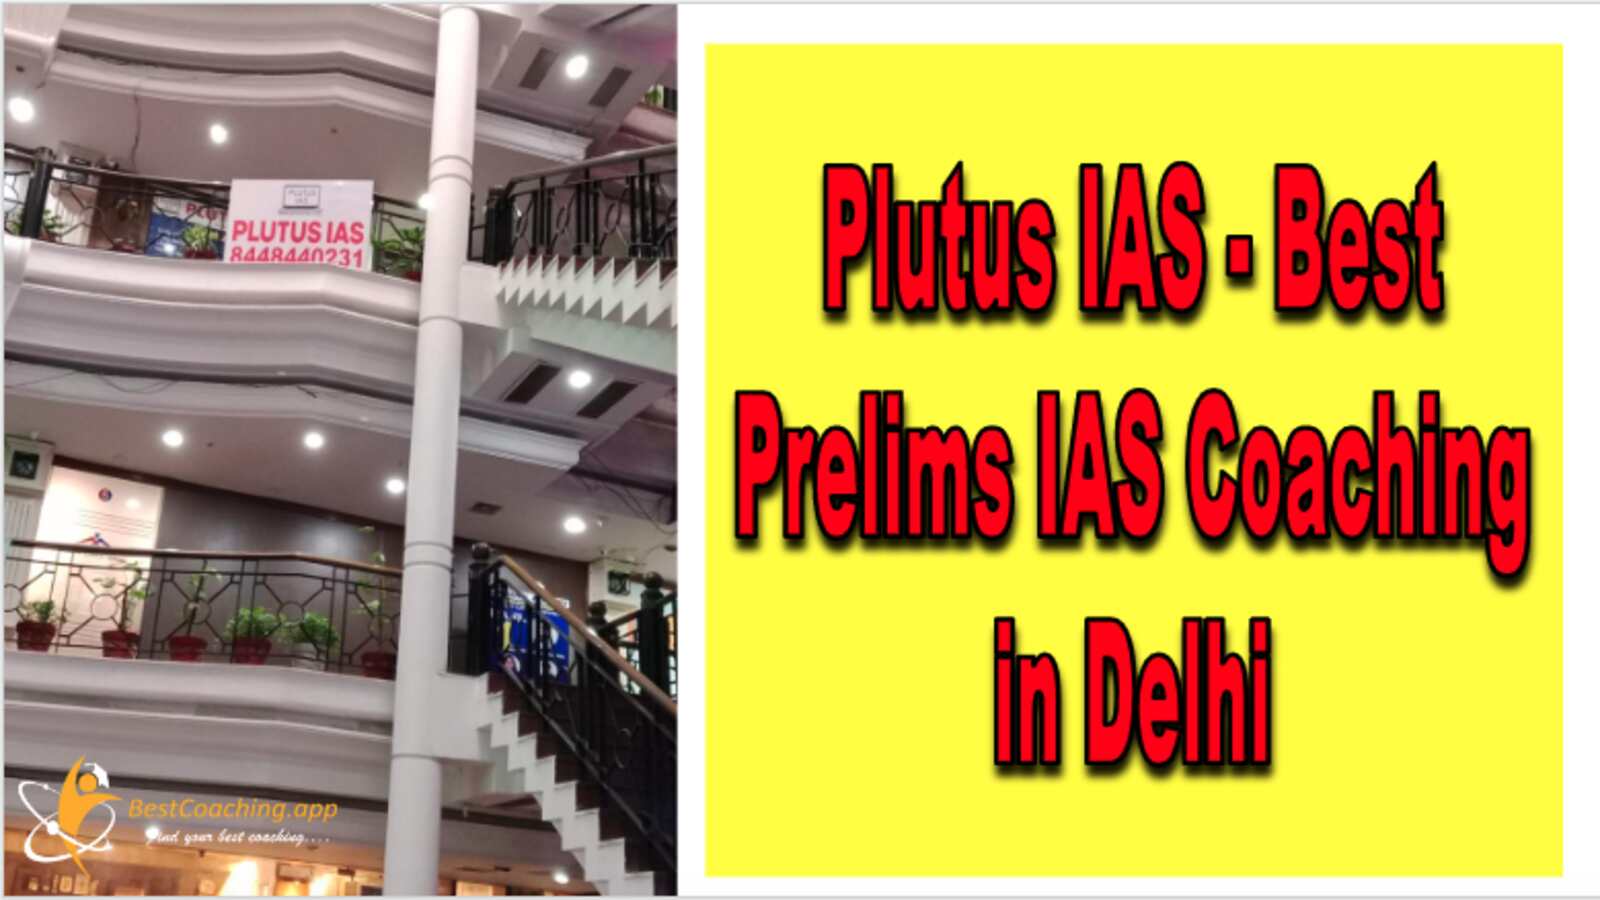 Plutus IAS - Best Prelims IAS Coaching in Delhi